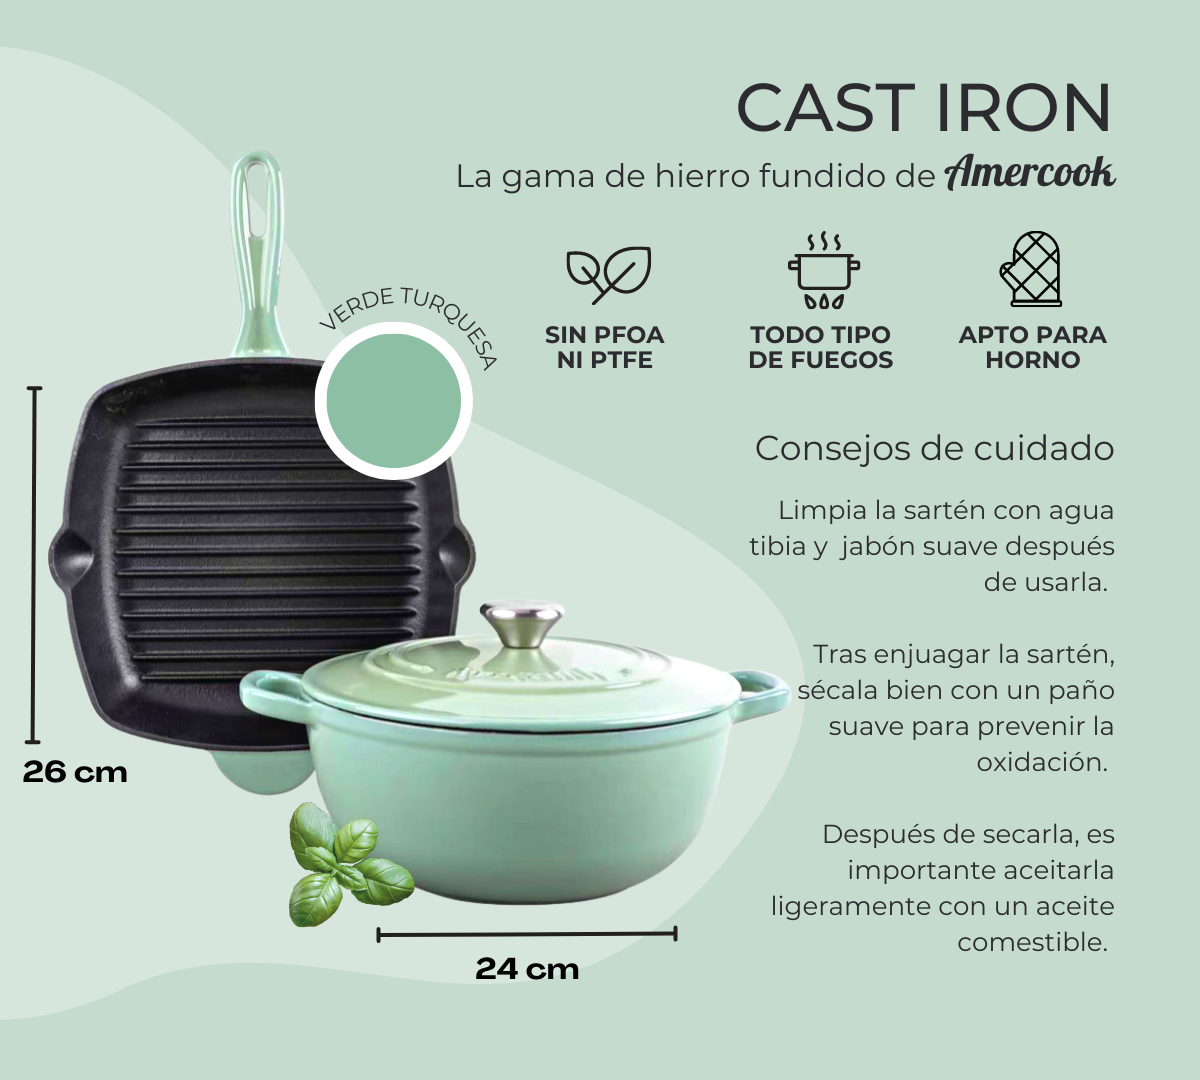 Set de grill y cacerola Cast Iron de hierro fundido verde turquesa, aptos para horno y todo tipo de cocinas